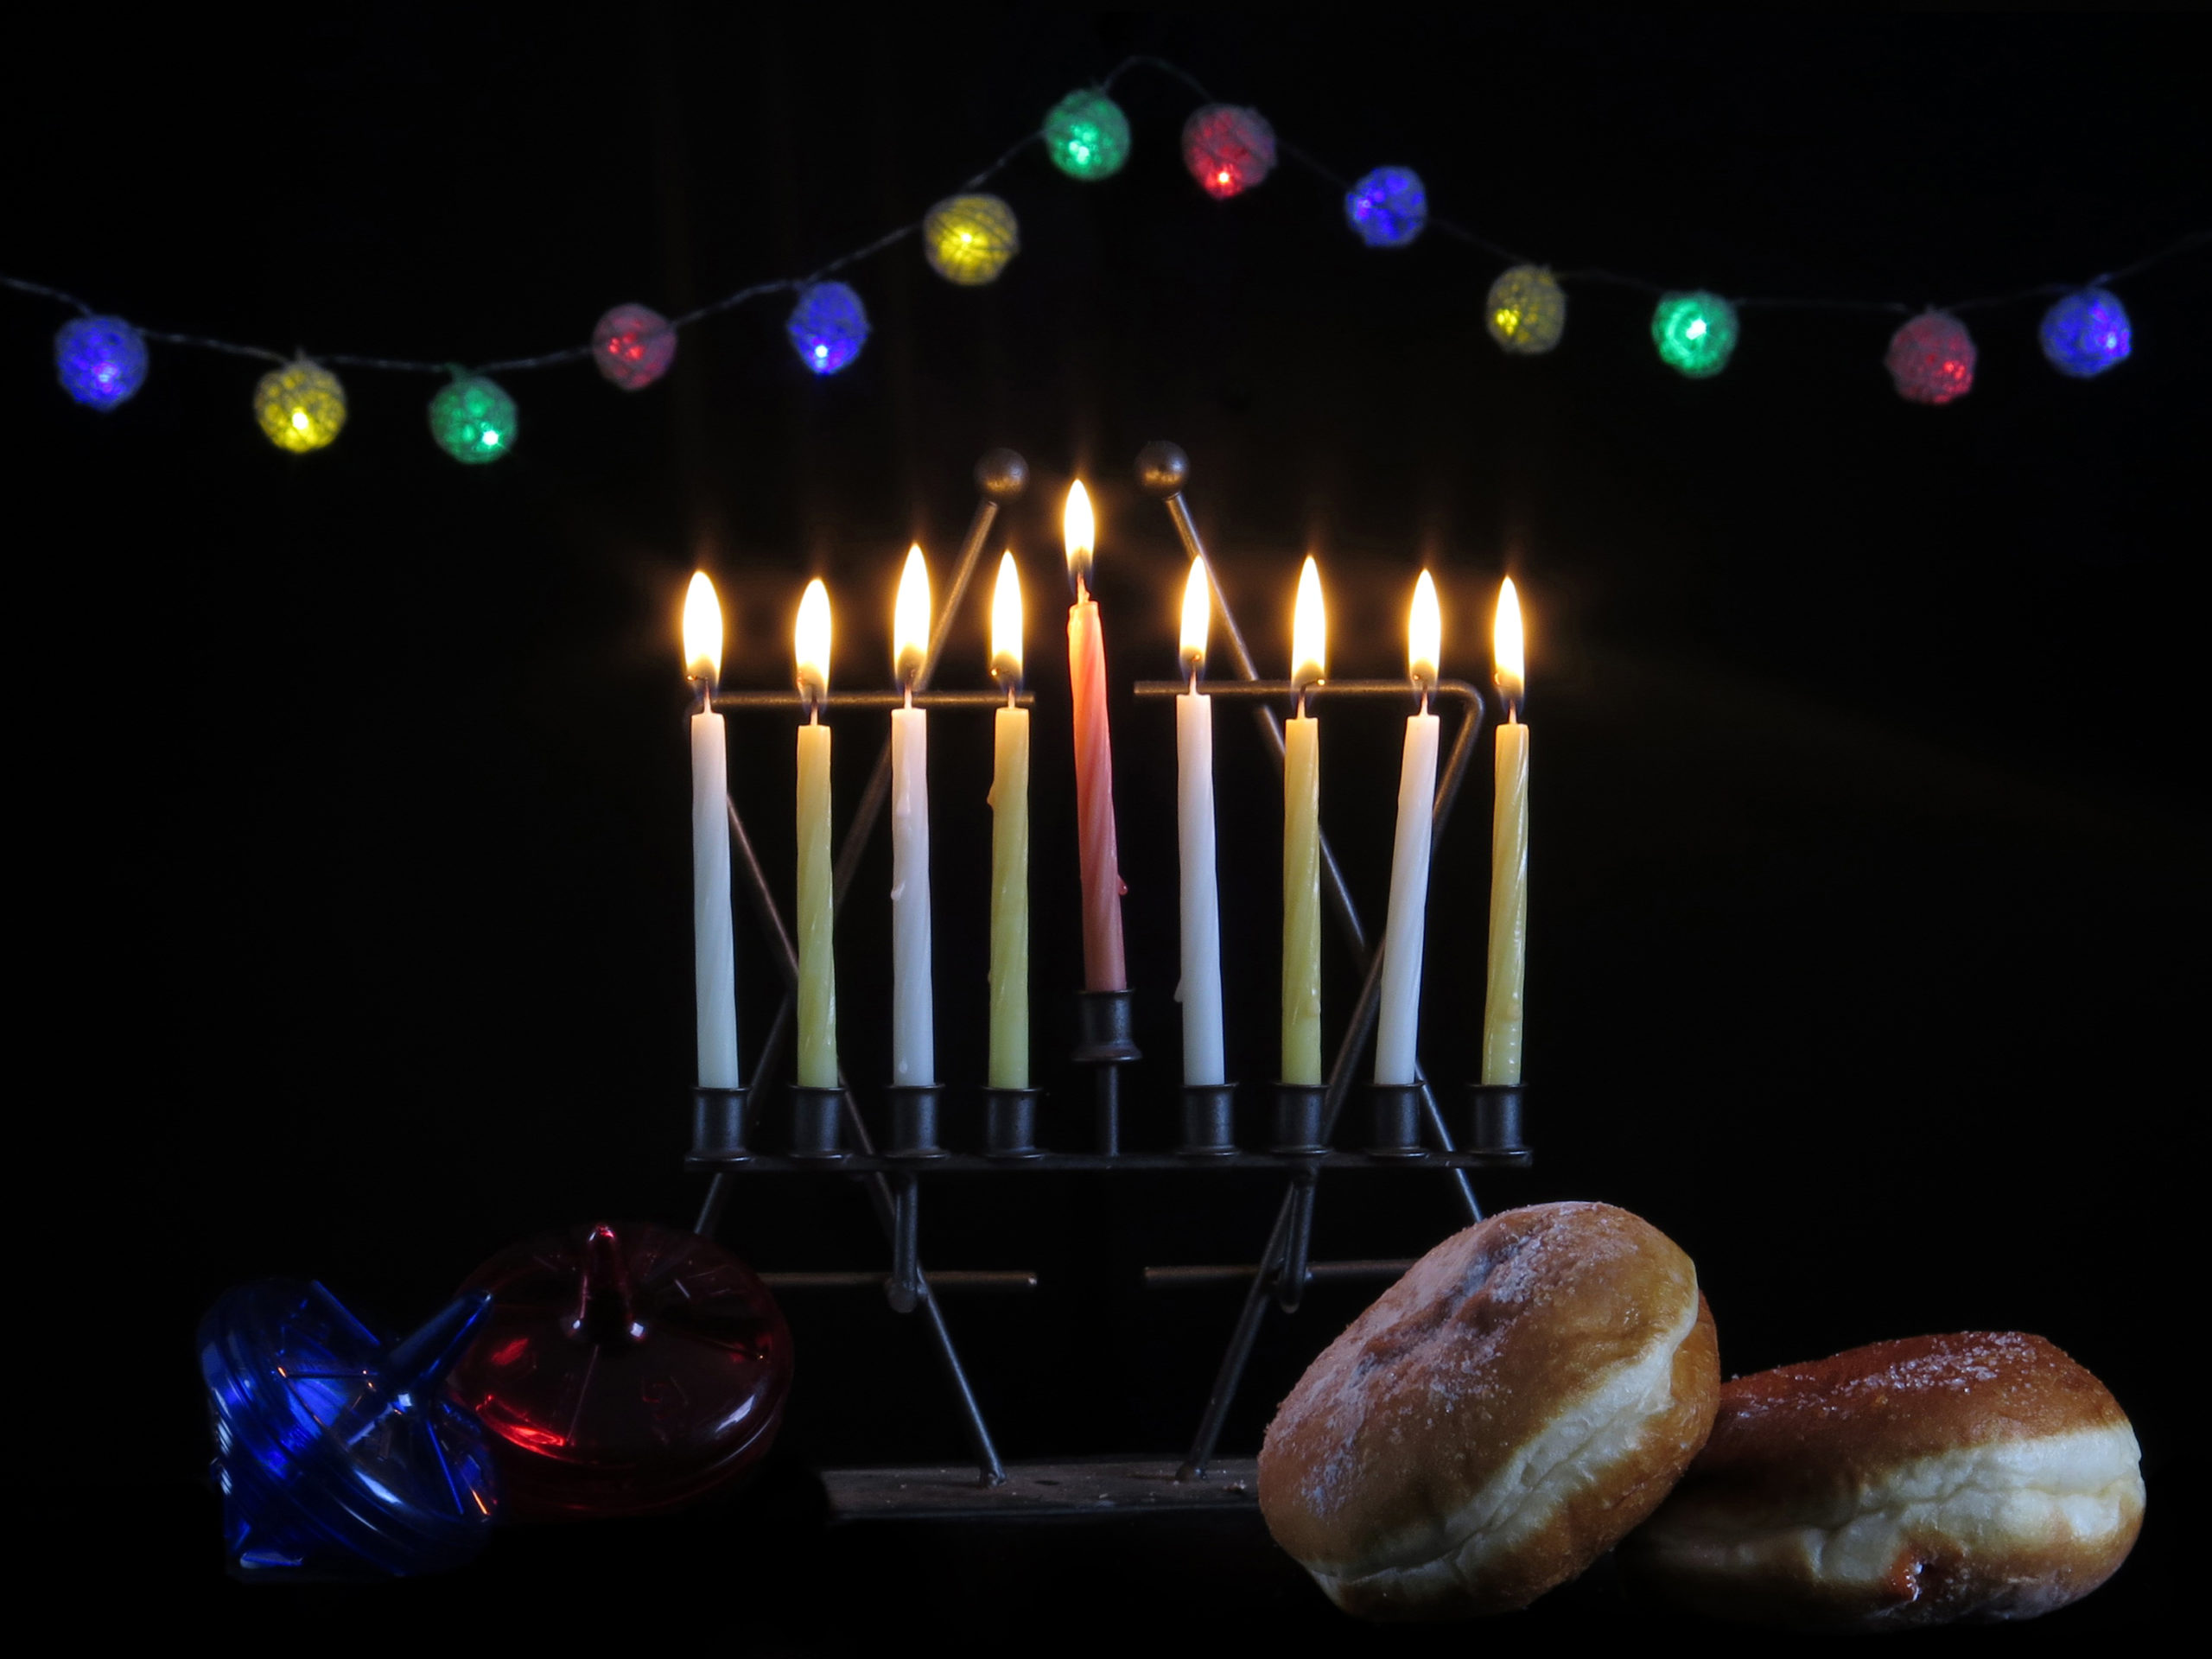  La Hanukkah celebrada en Esauira en un ambiente amistoso